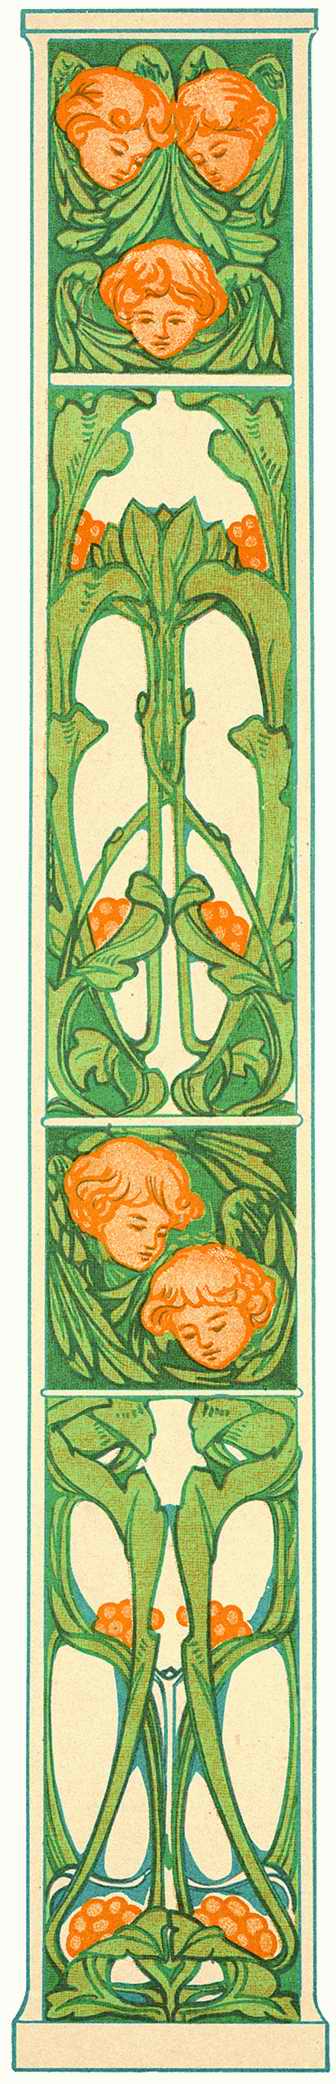 Art Nouveau Designs - Pepin Press ></a>
<script language=JavaScript> 
  var txt = 